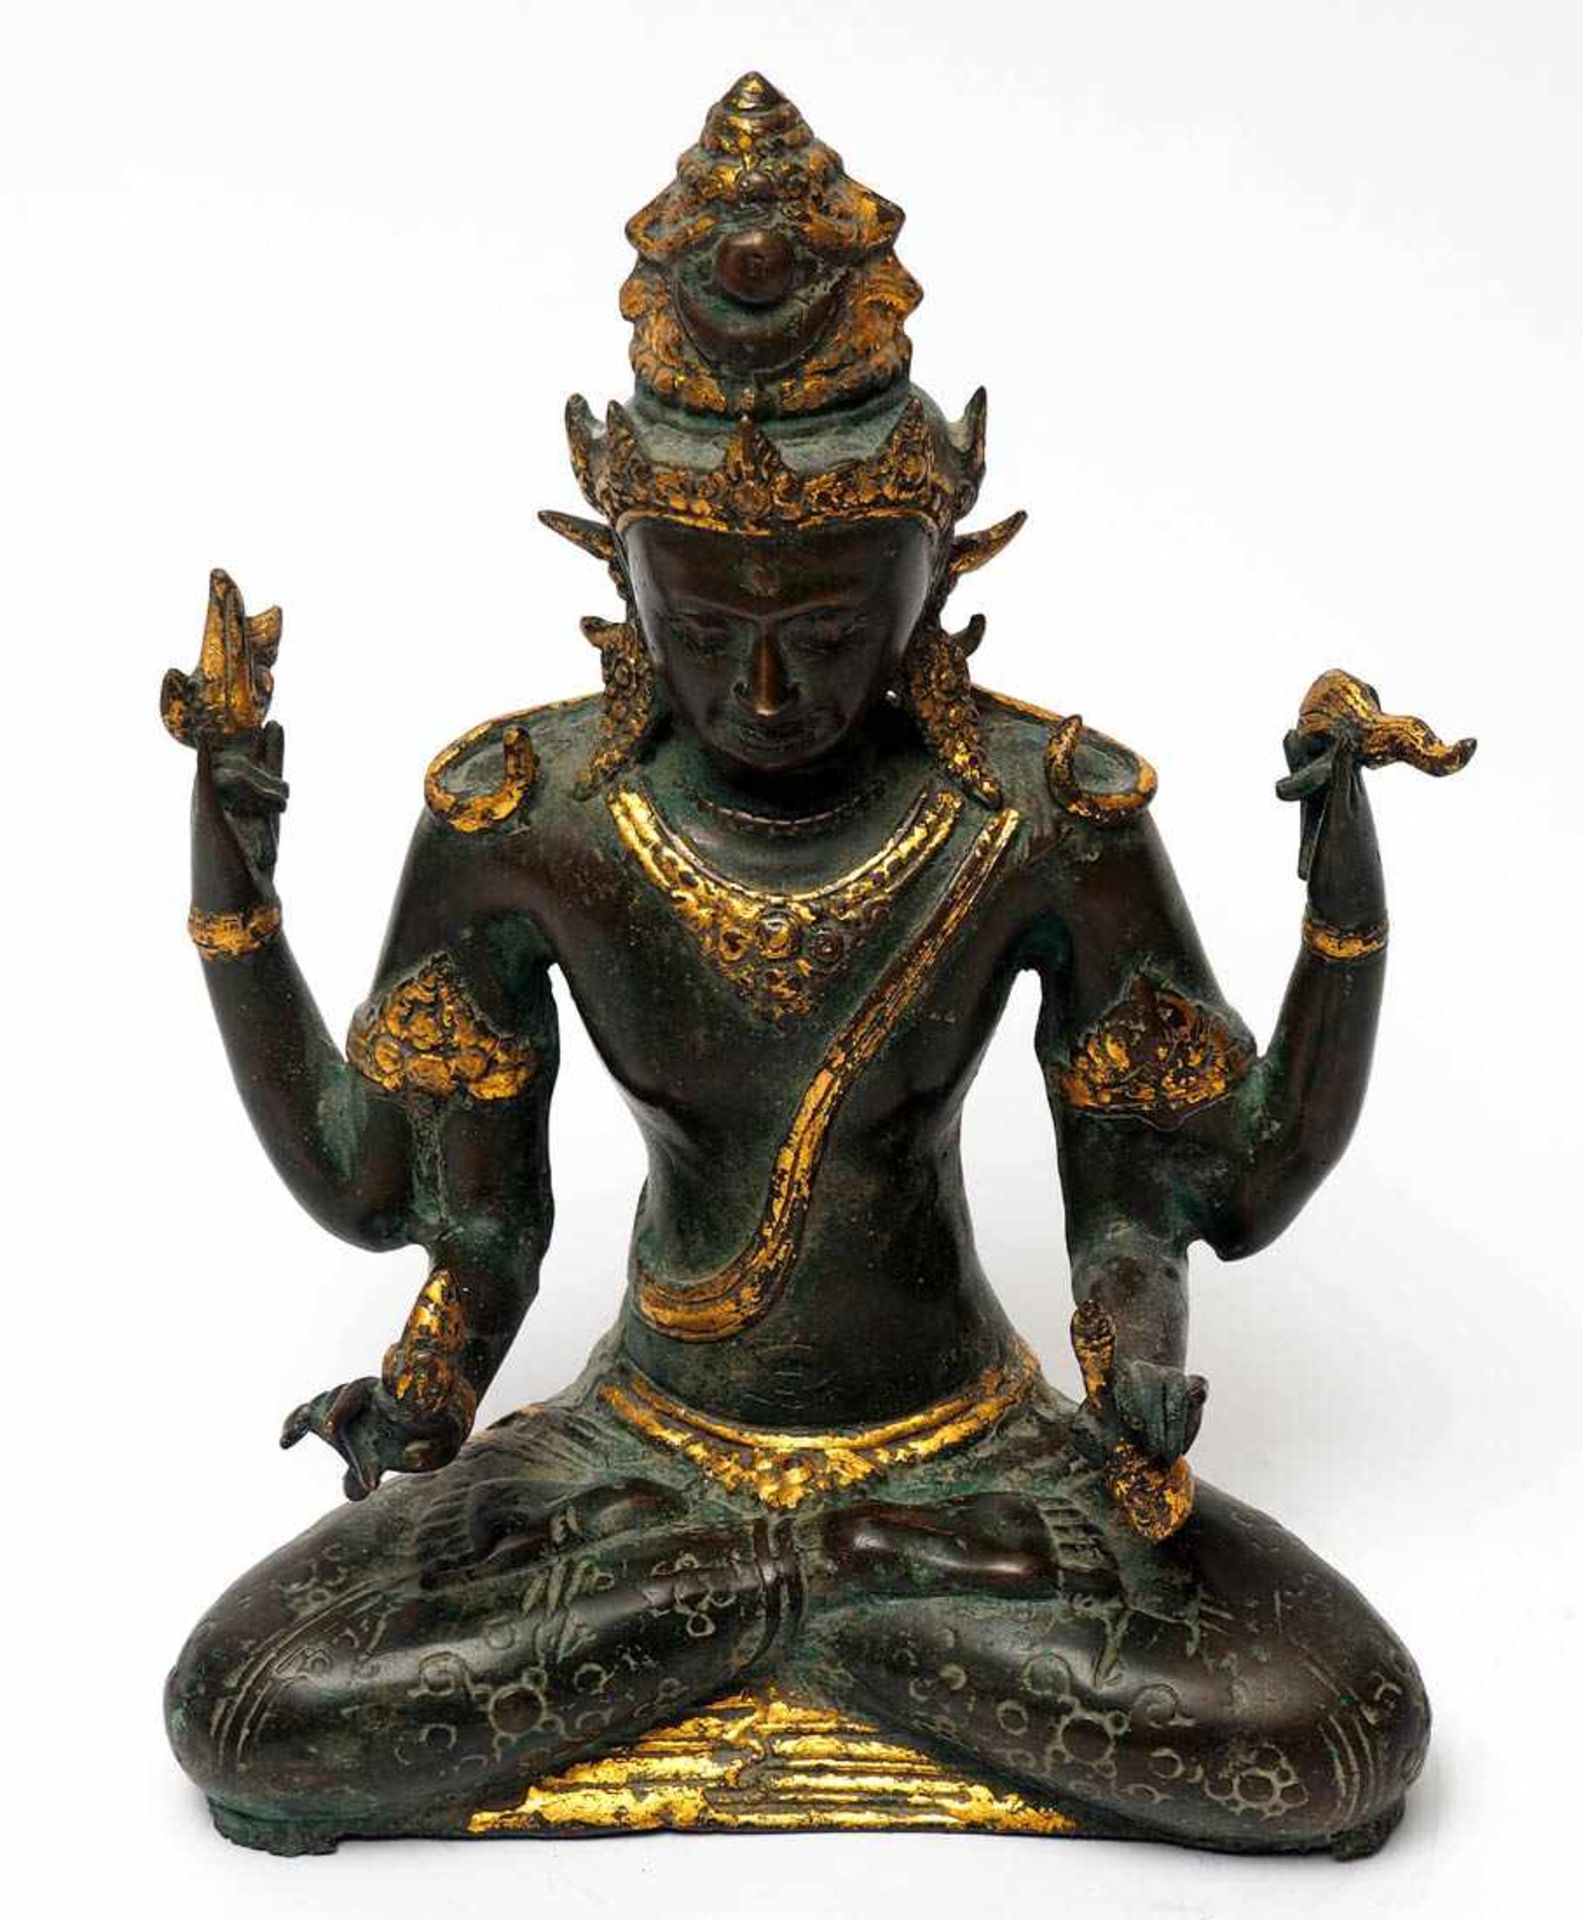 Götterfigur, 19.Jhdt. Wahrscheinlich die hinduistische Göttin Lakshmi. Teilvergoldet. H.28cm, B.